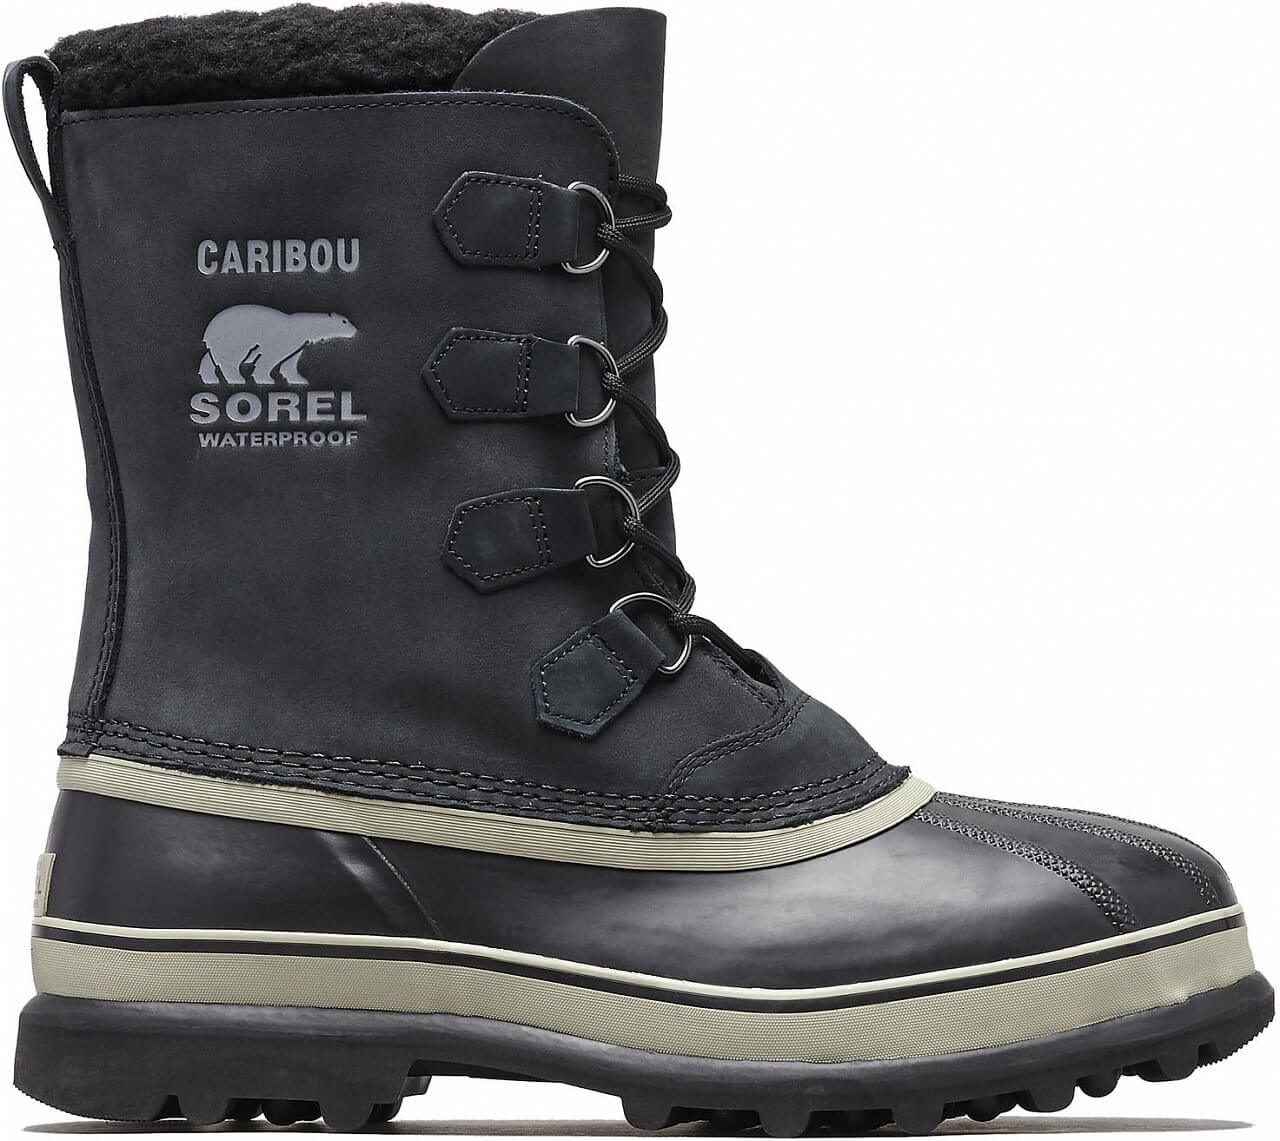 Pánská zimní obuv Sorel Caribou